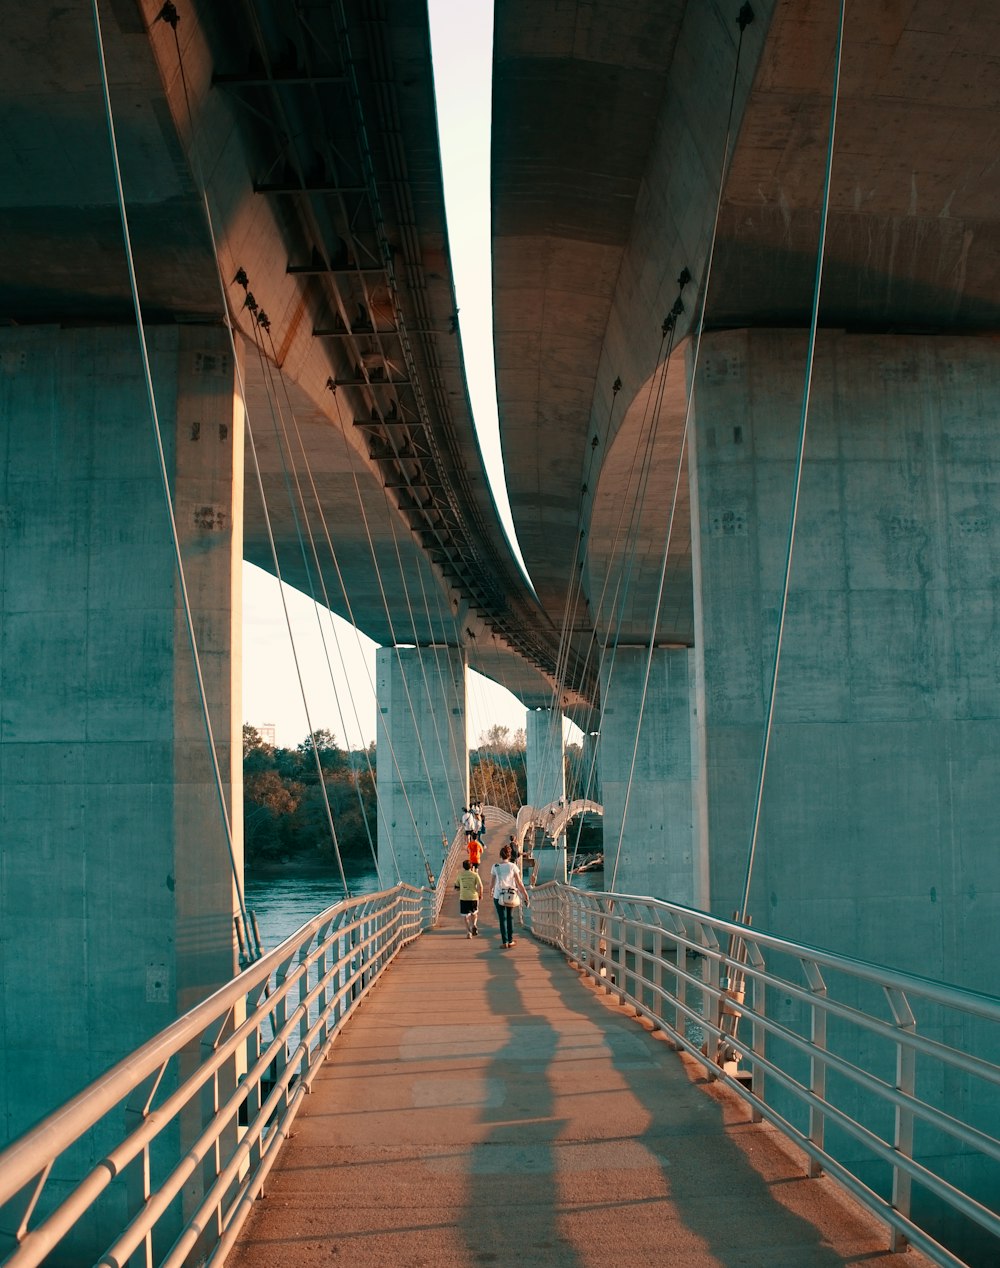 people walking on walk bridge during daytime